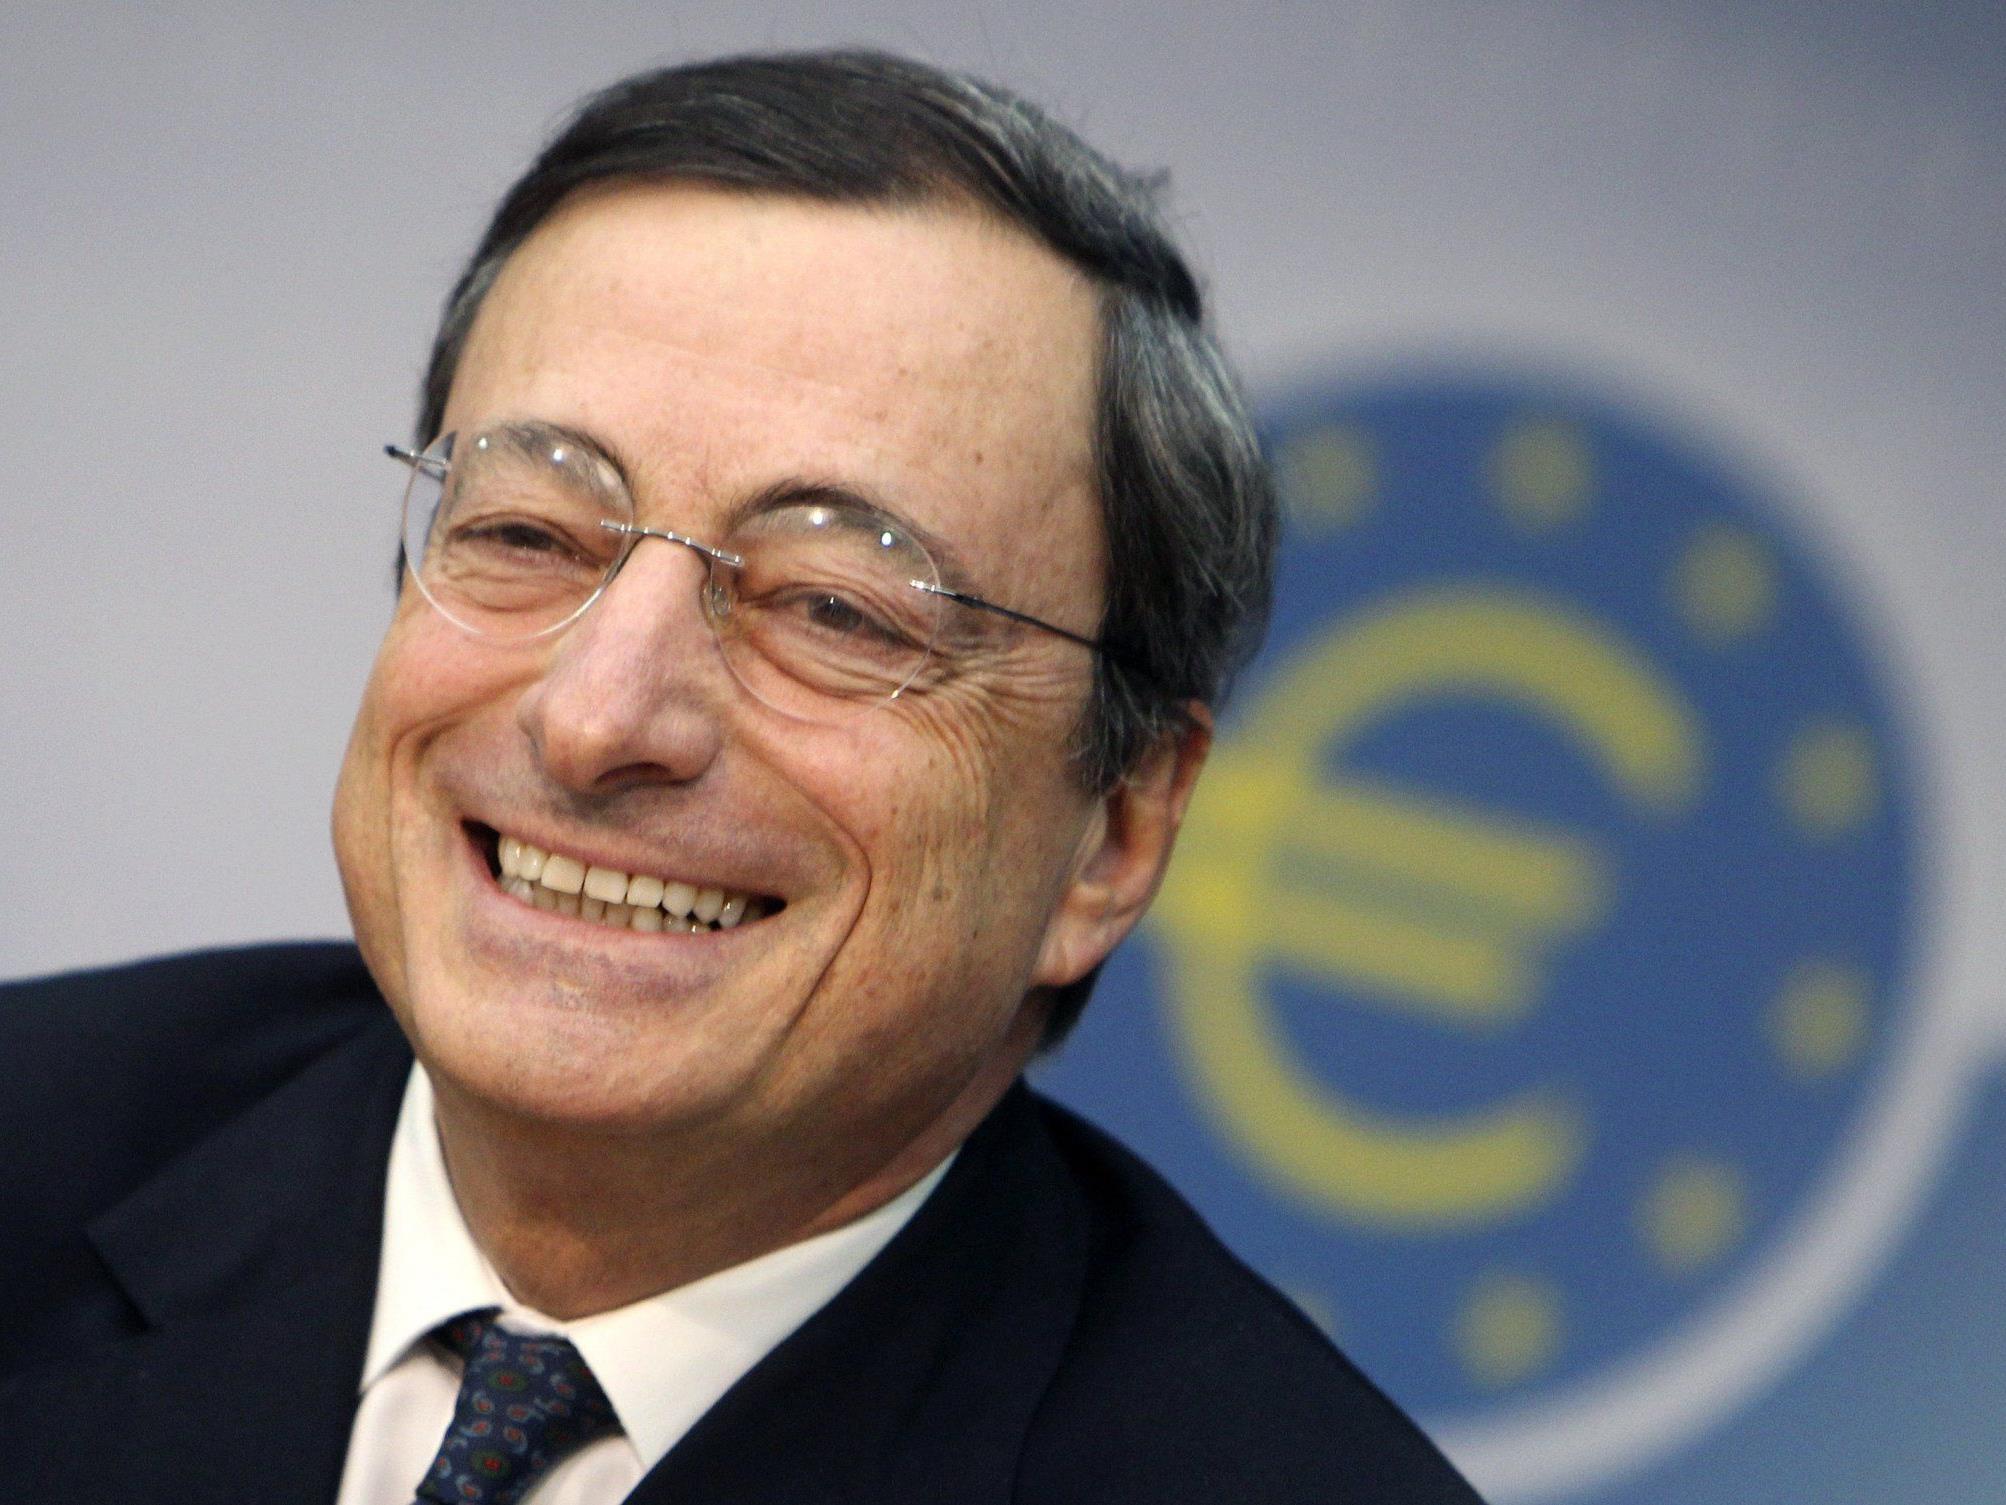 Zentralbank blicke mit "Argusaugen" auf Lage in Griechenland.